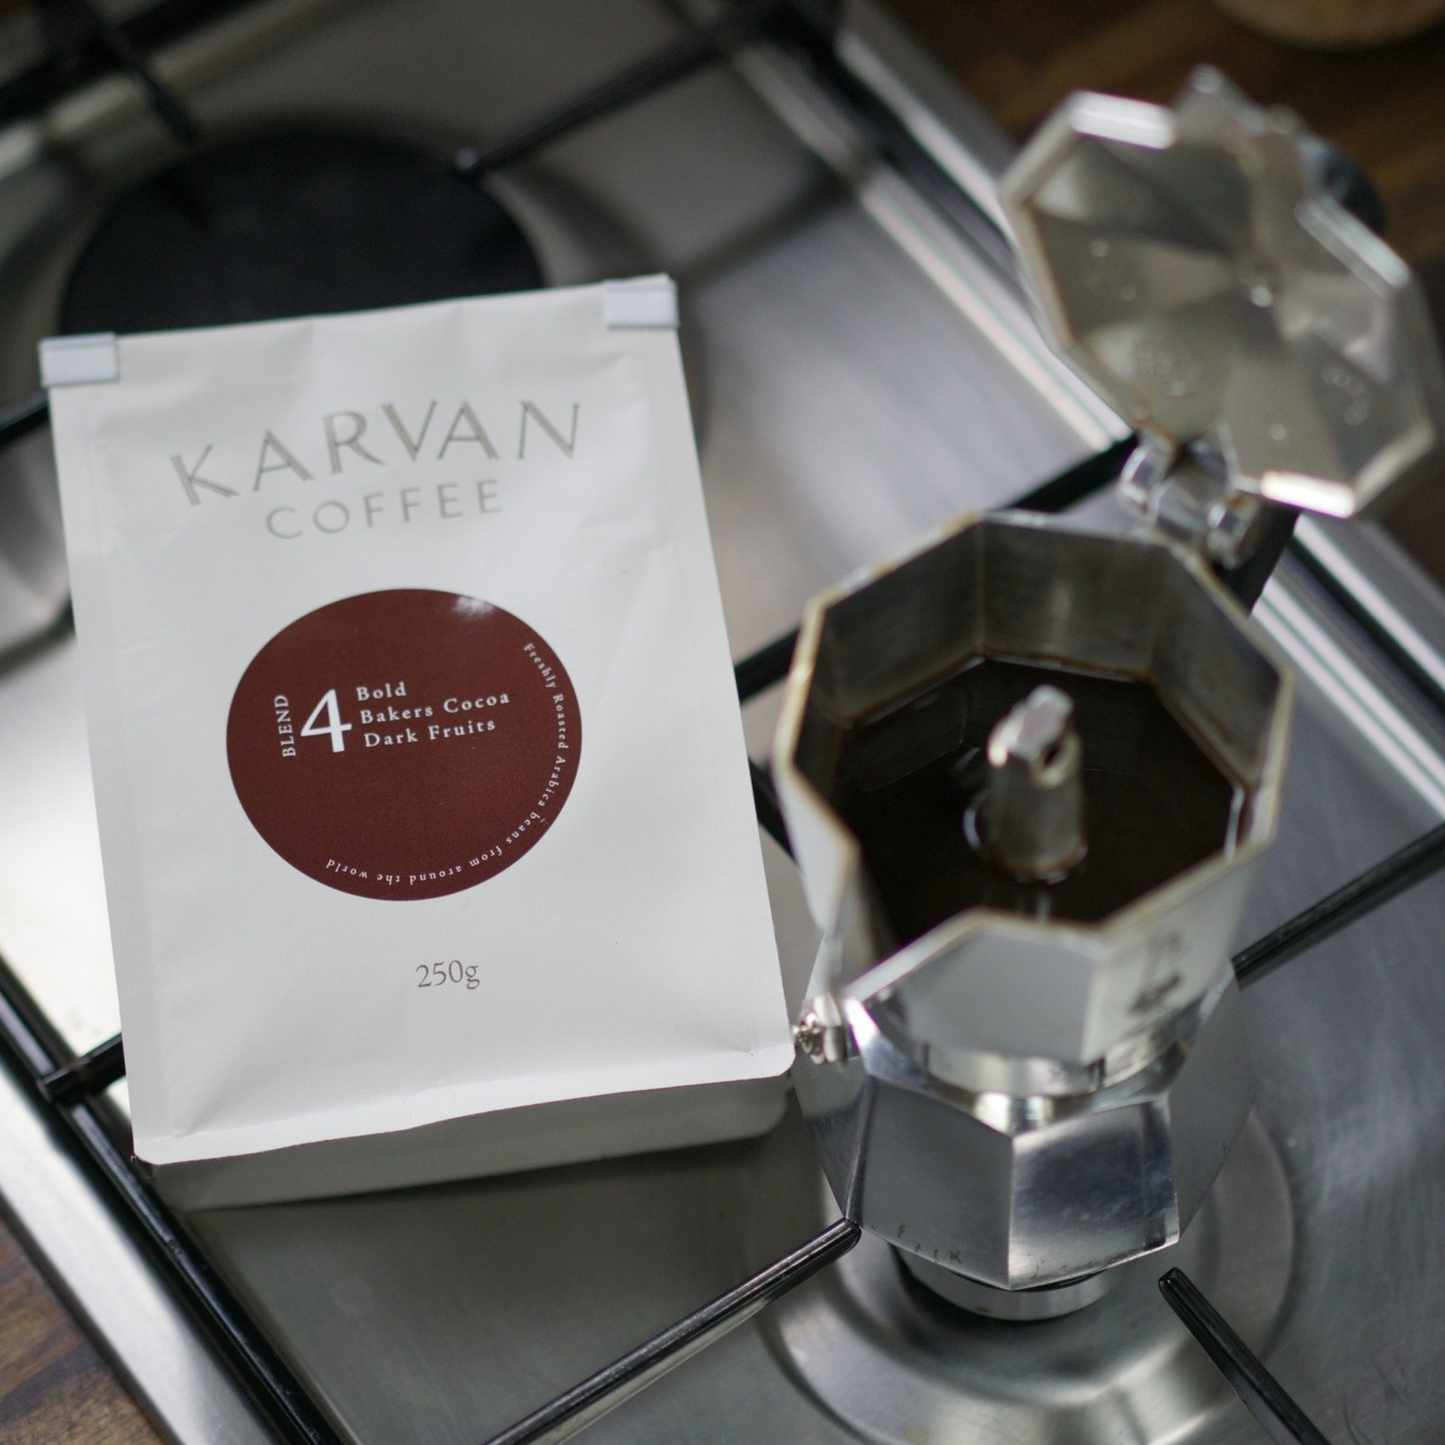 Coffee - Karvan Blend #4 Most Popular